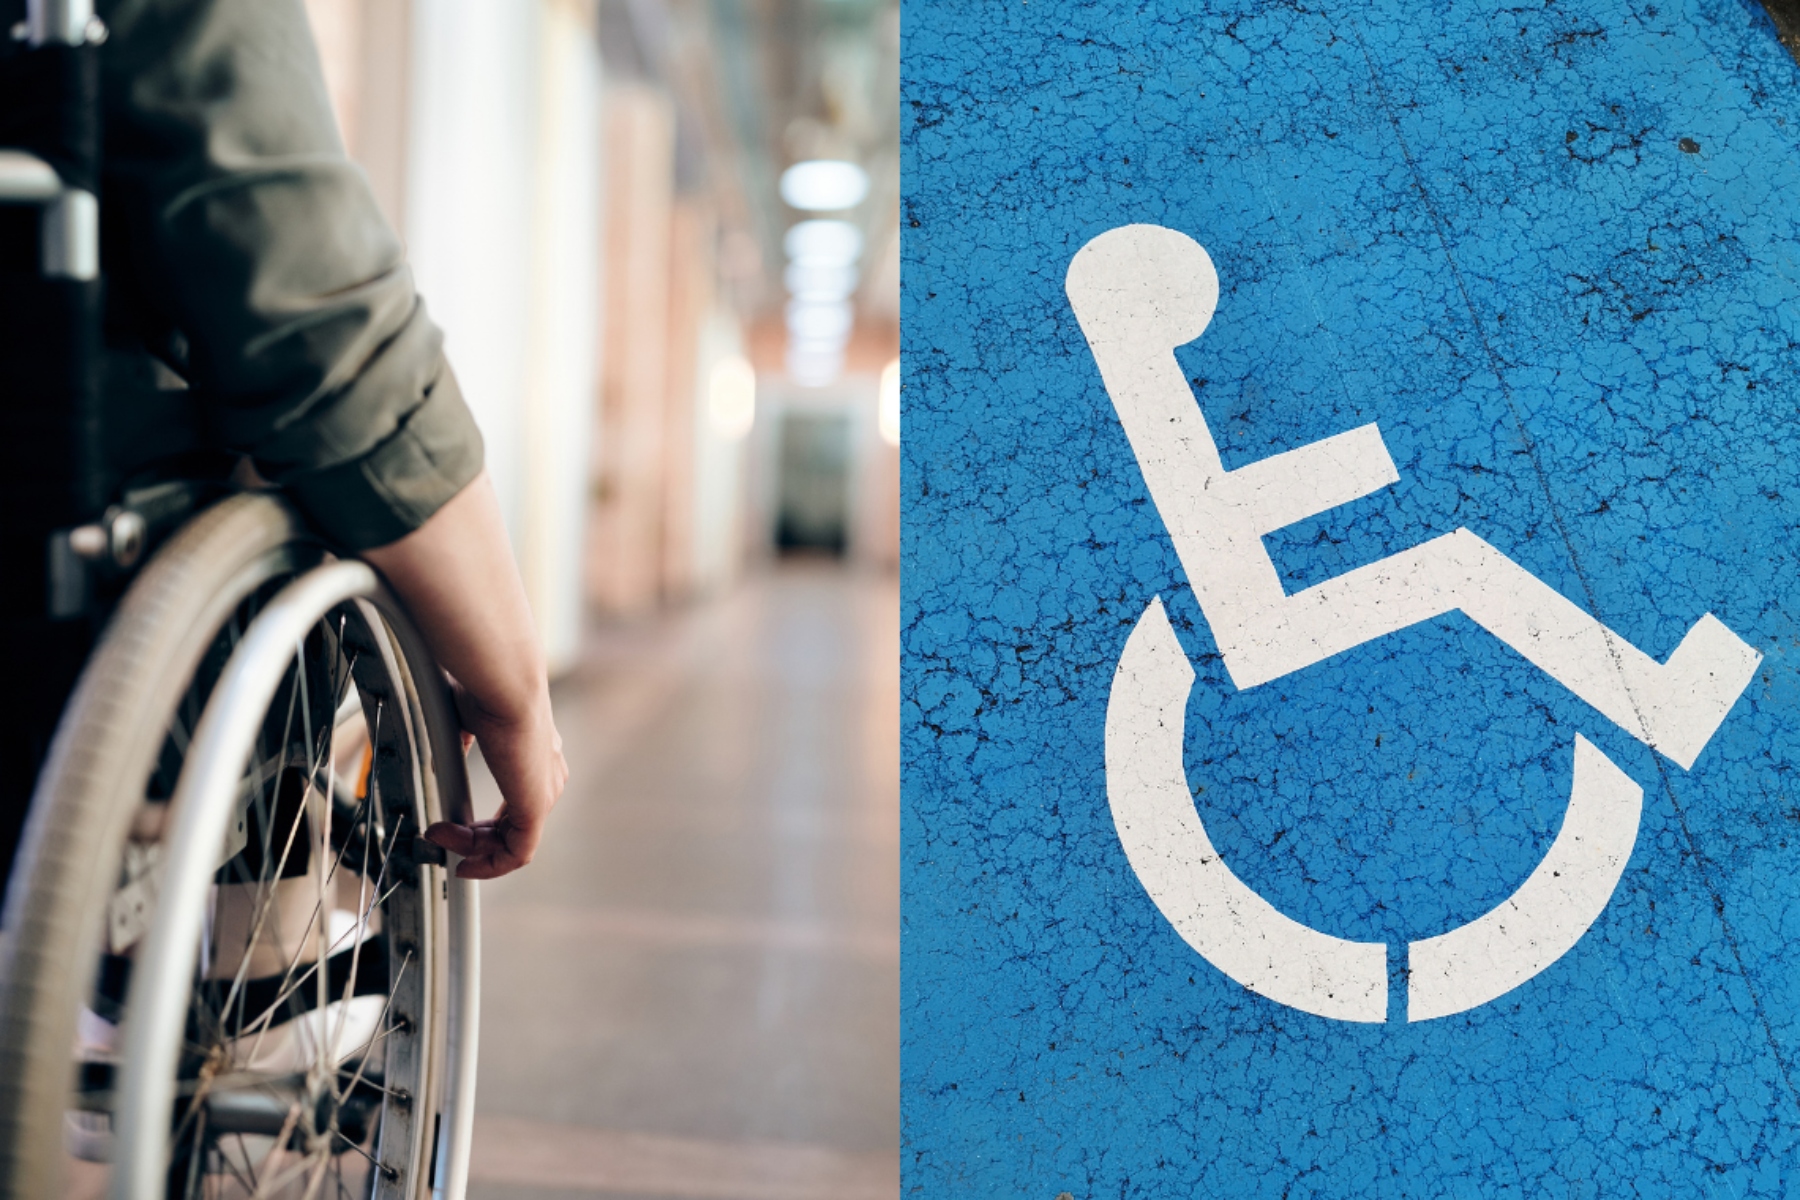 ΕΣΑμεΑ: Δικαιώματα & κοινωνικές παροχές για άτομα με αναπηρία, χρόνιες παθήσεις και τις οικογένειές τους